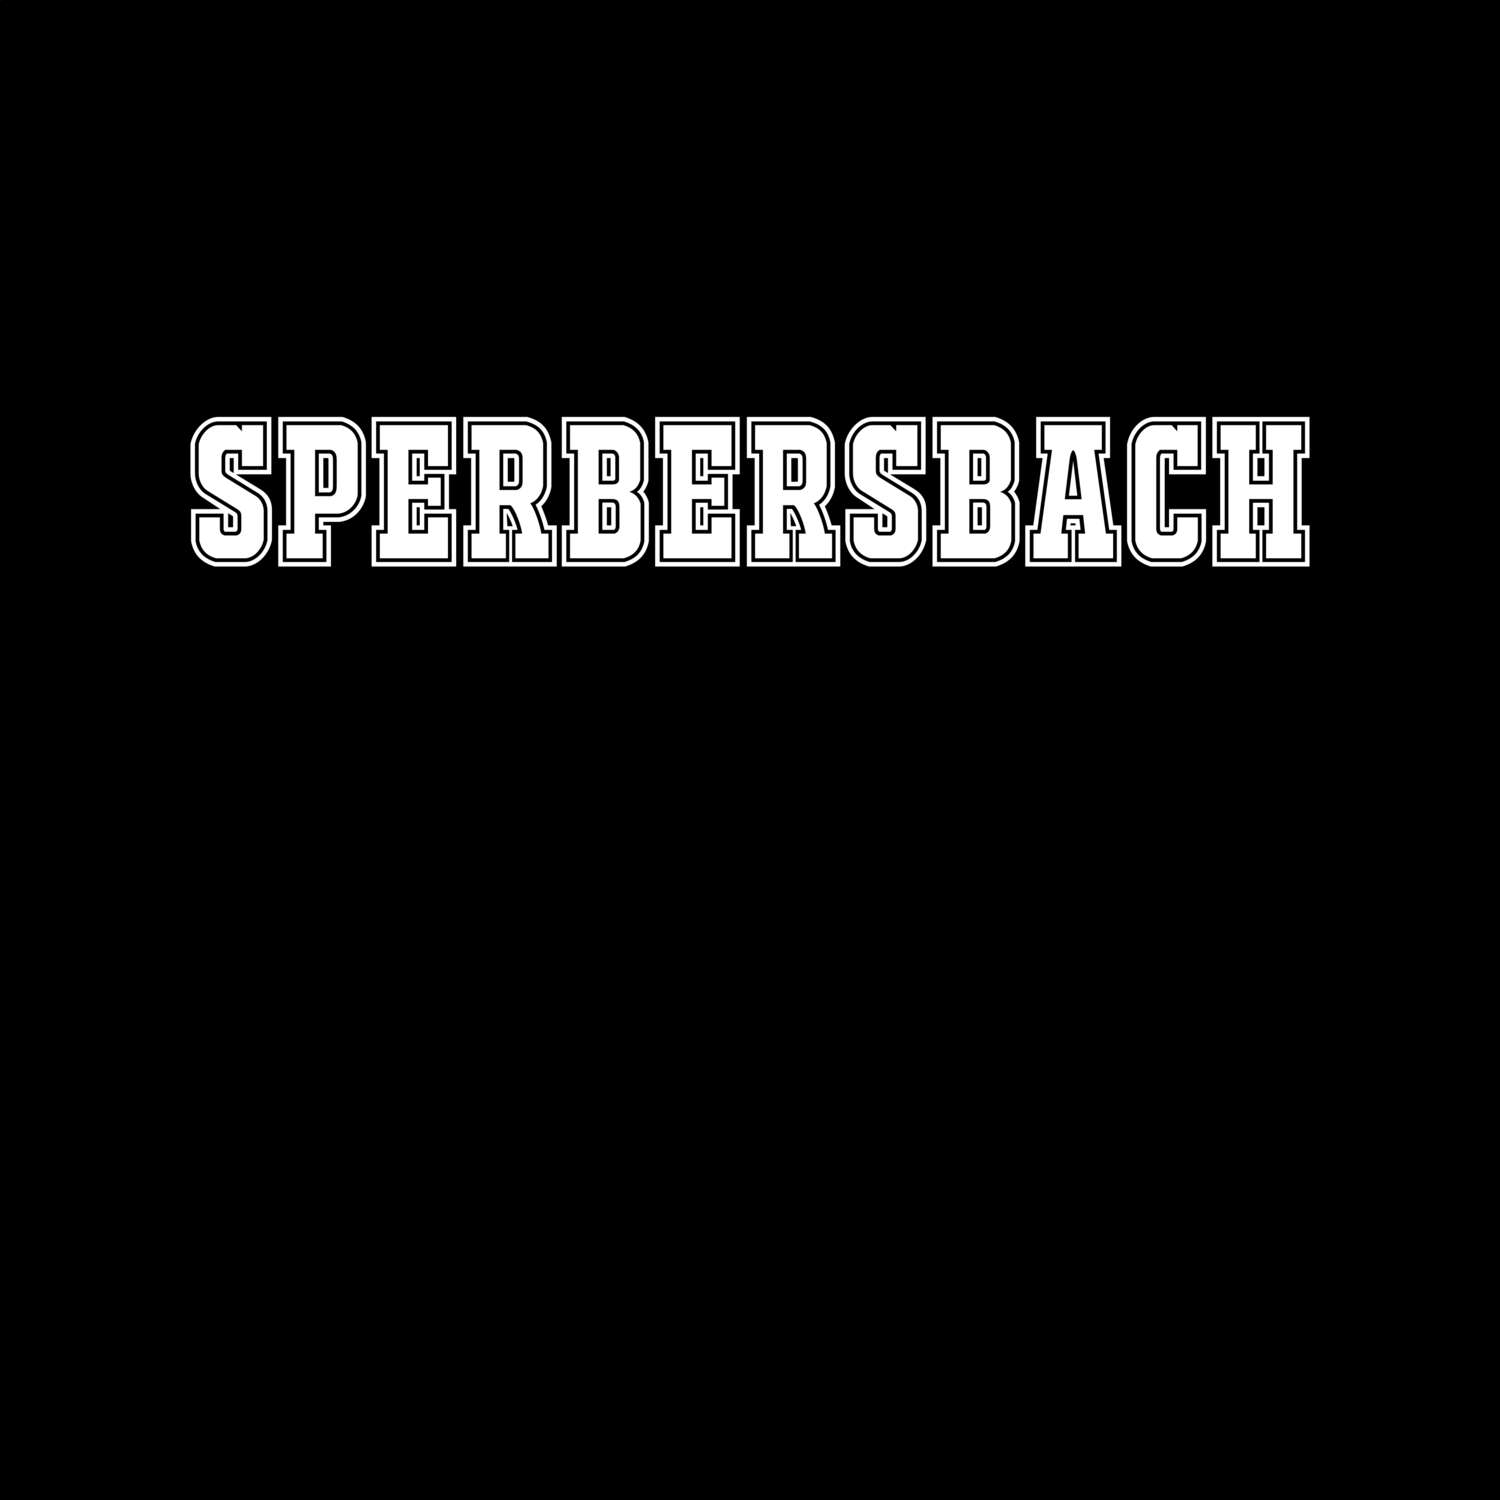 Sperbersbach T-Shirt »Classic«